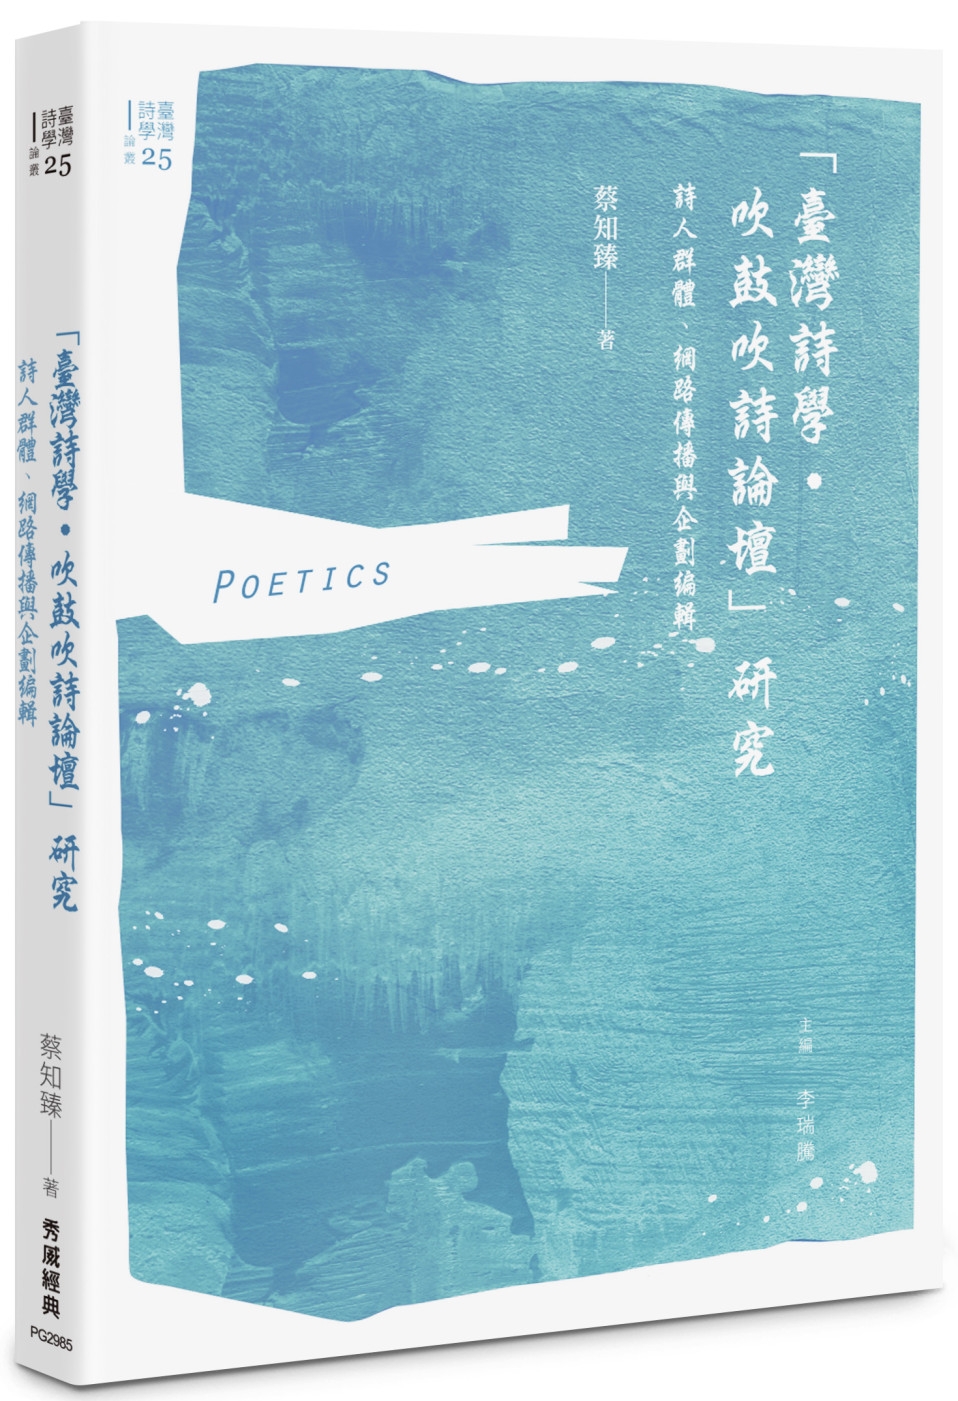 「臺灣詩學‧吹鼓吹詩論壇」研究：詩人群體、網路傳播與企劃編輯